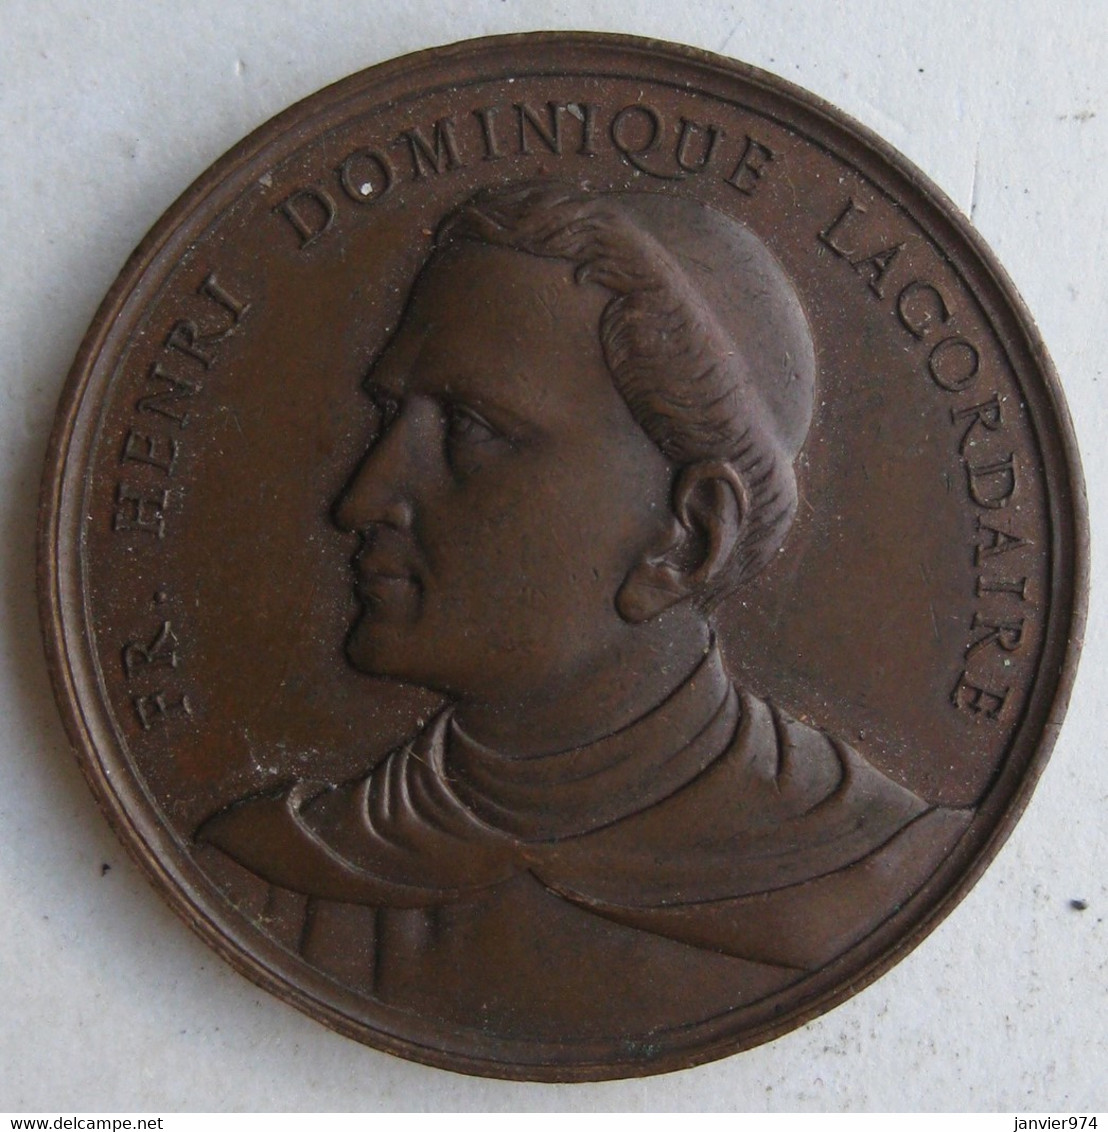 Médaille. Ecole St Thomas D’Aquin OULLINS 1860 - 1879, PRIX. H.D. Lacordaire. Par Penin . Lyon - Professionals / Firms